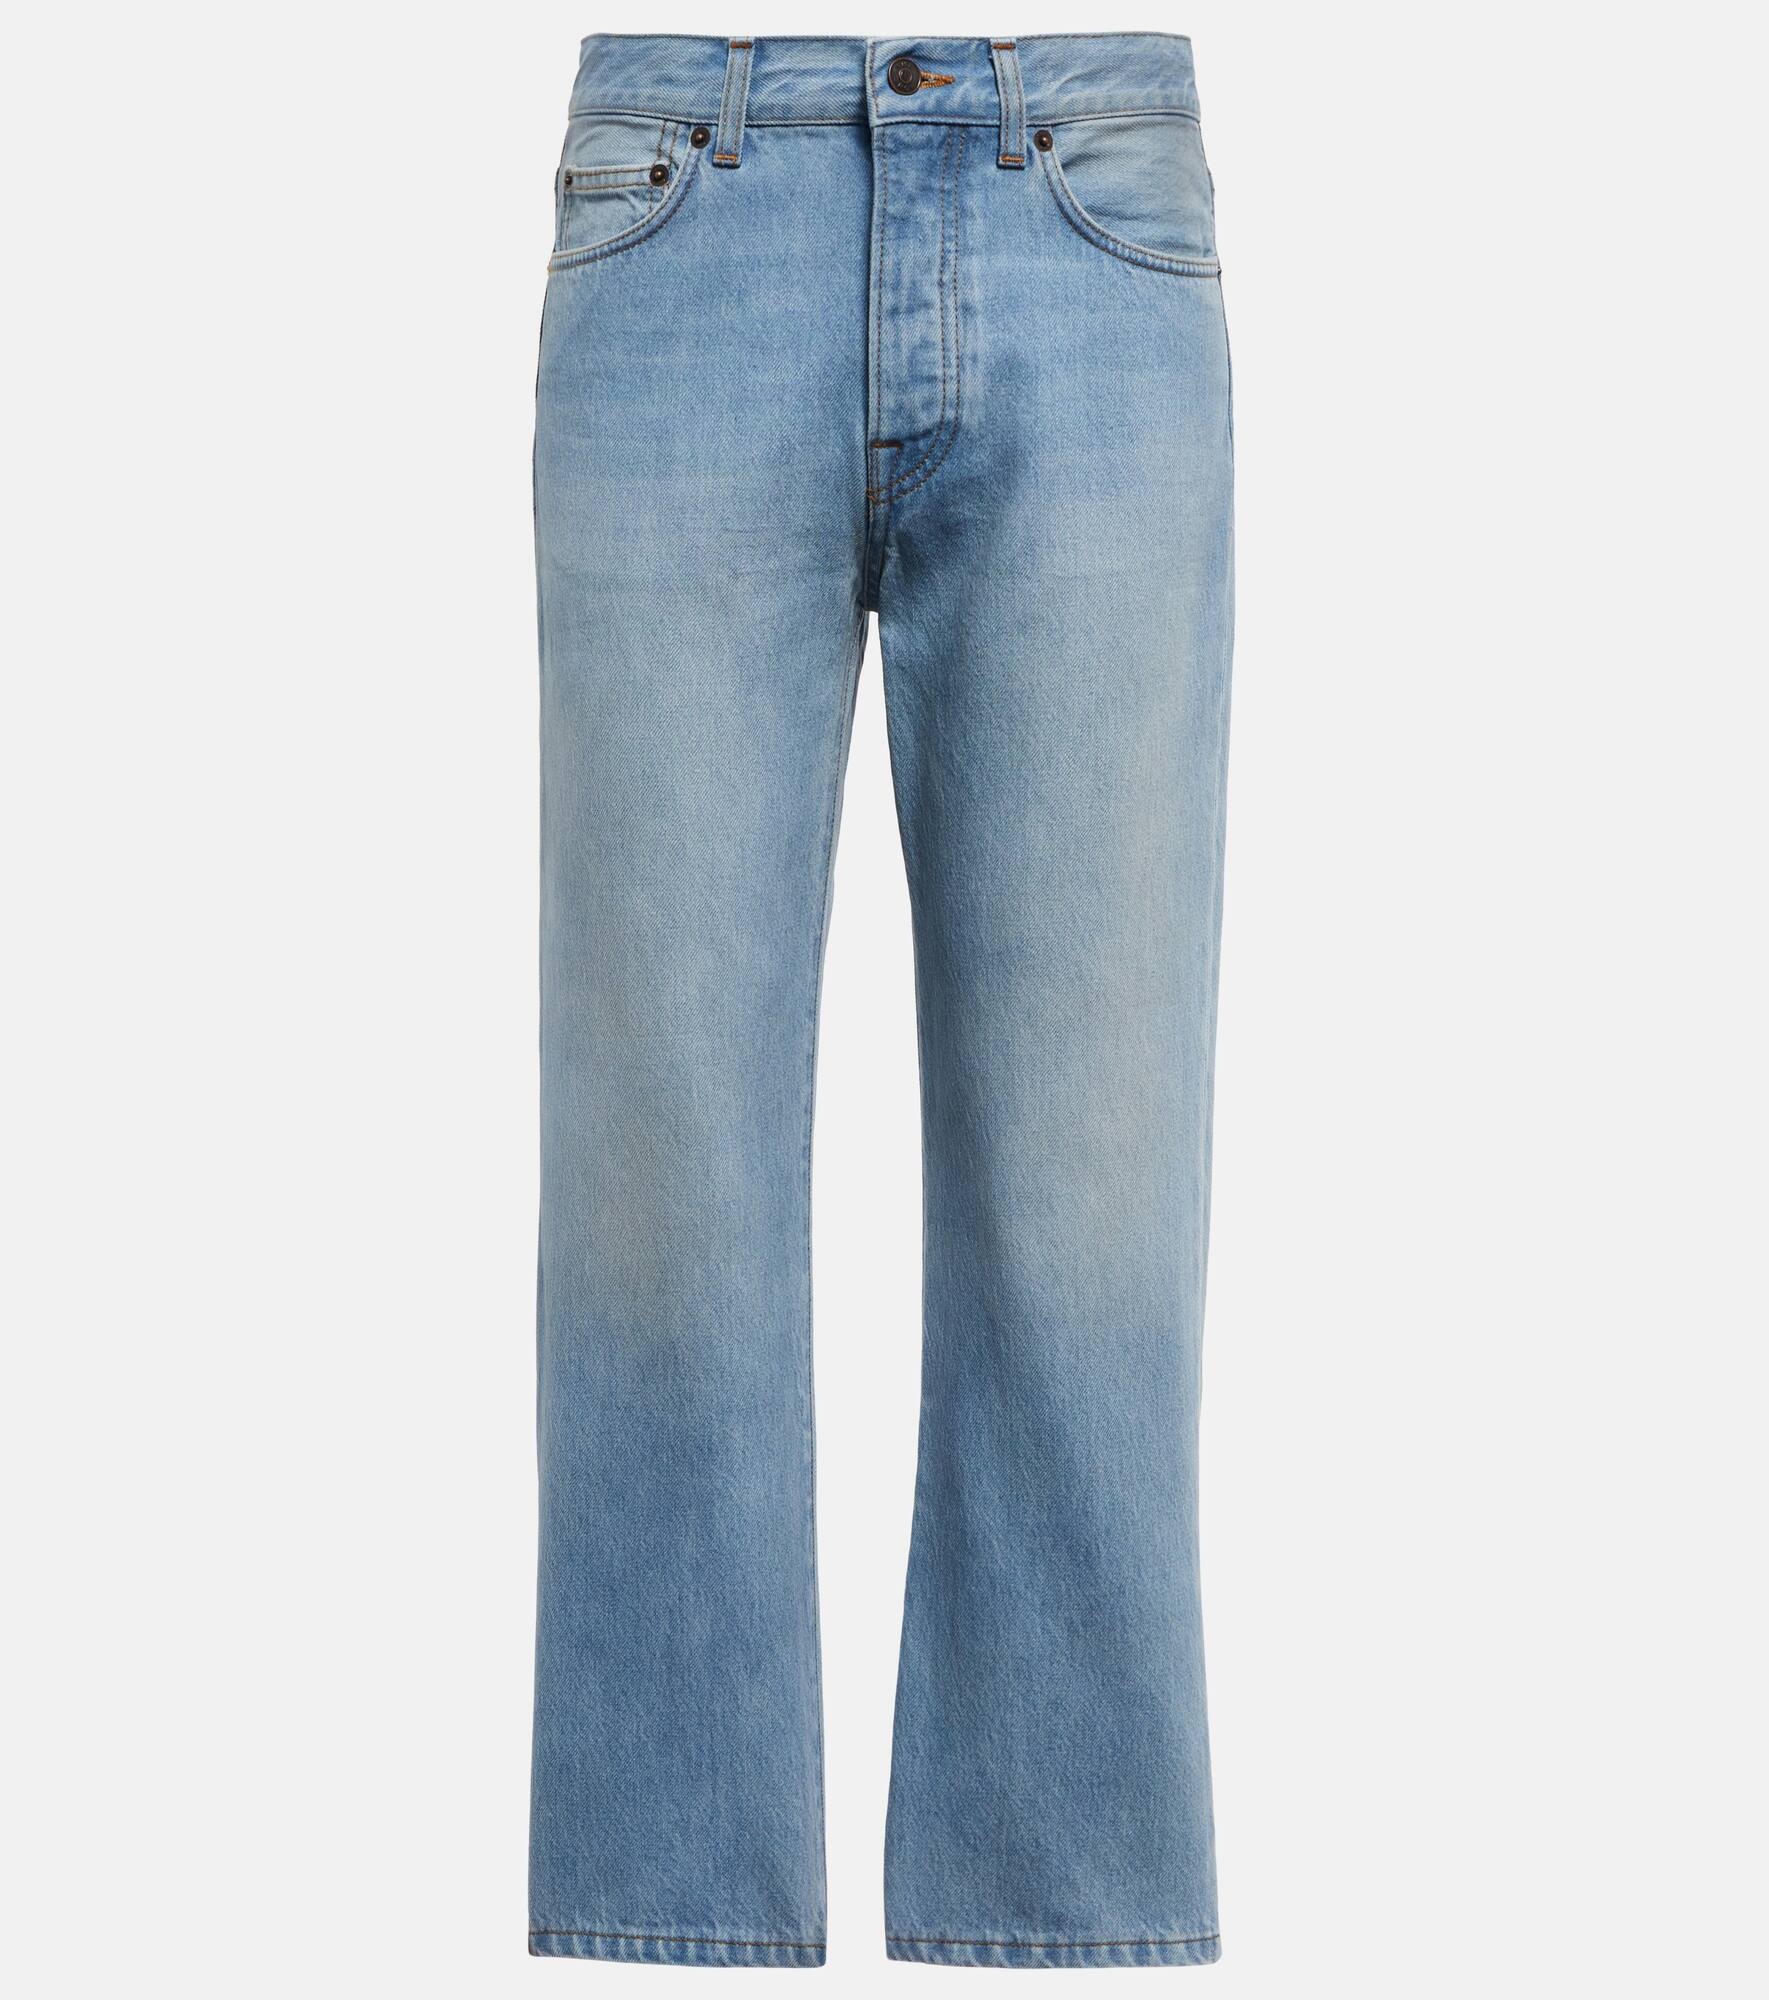 Lesley cropped denim jeans - 1